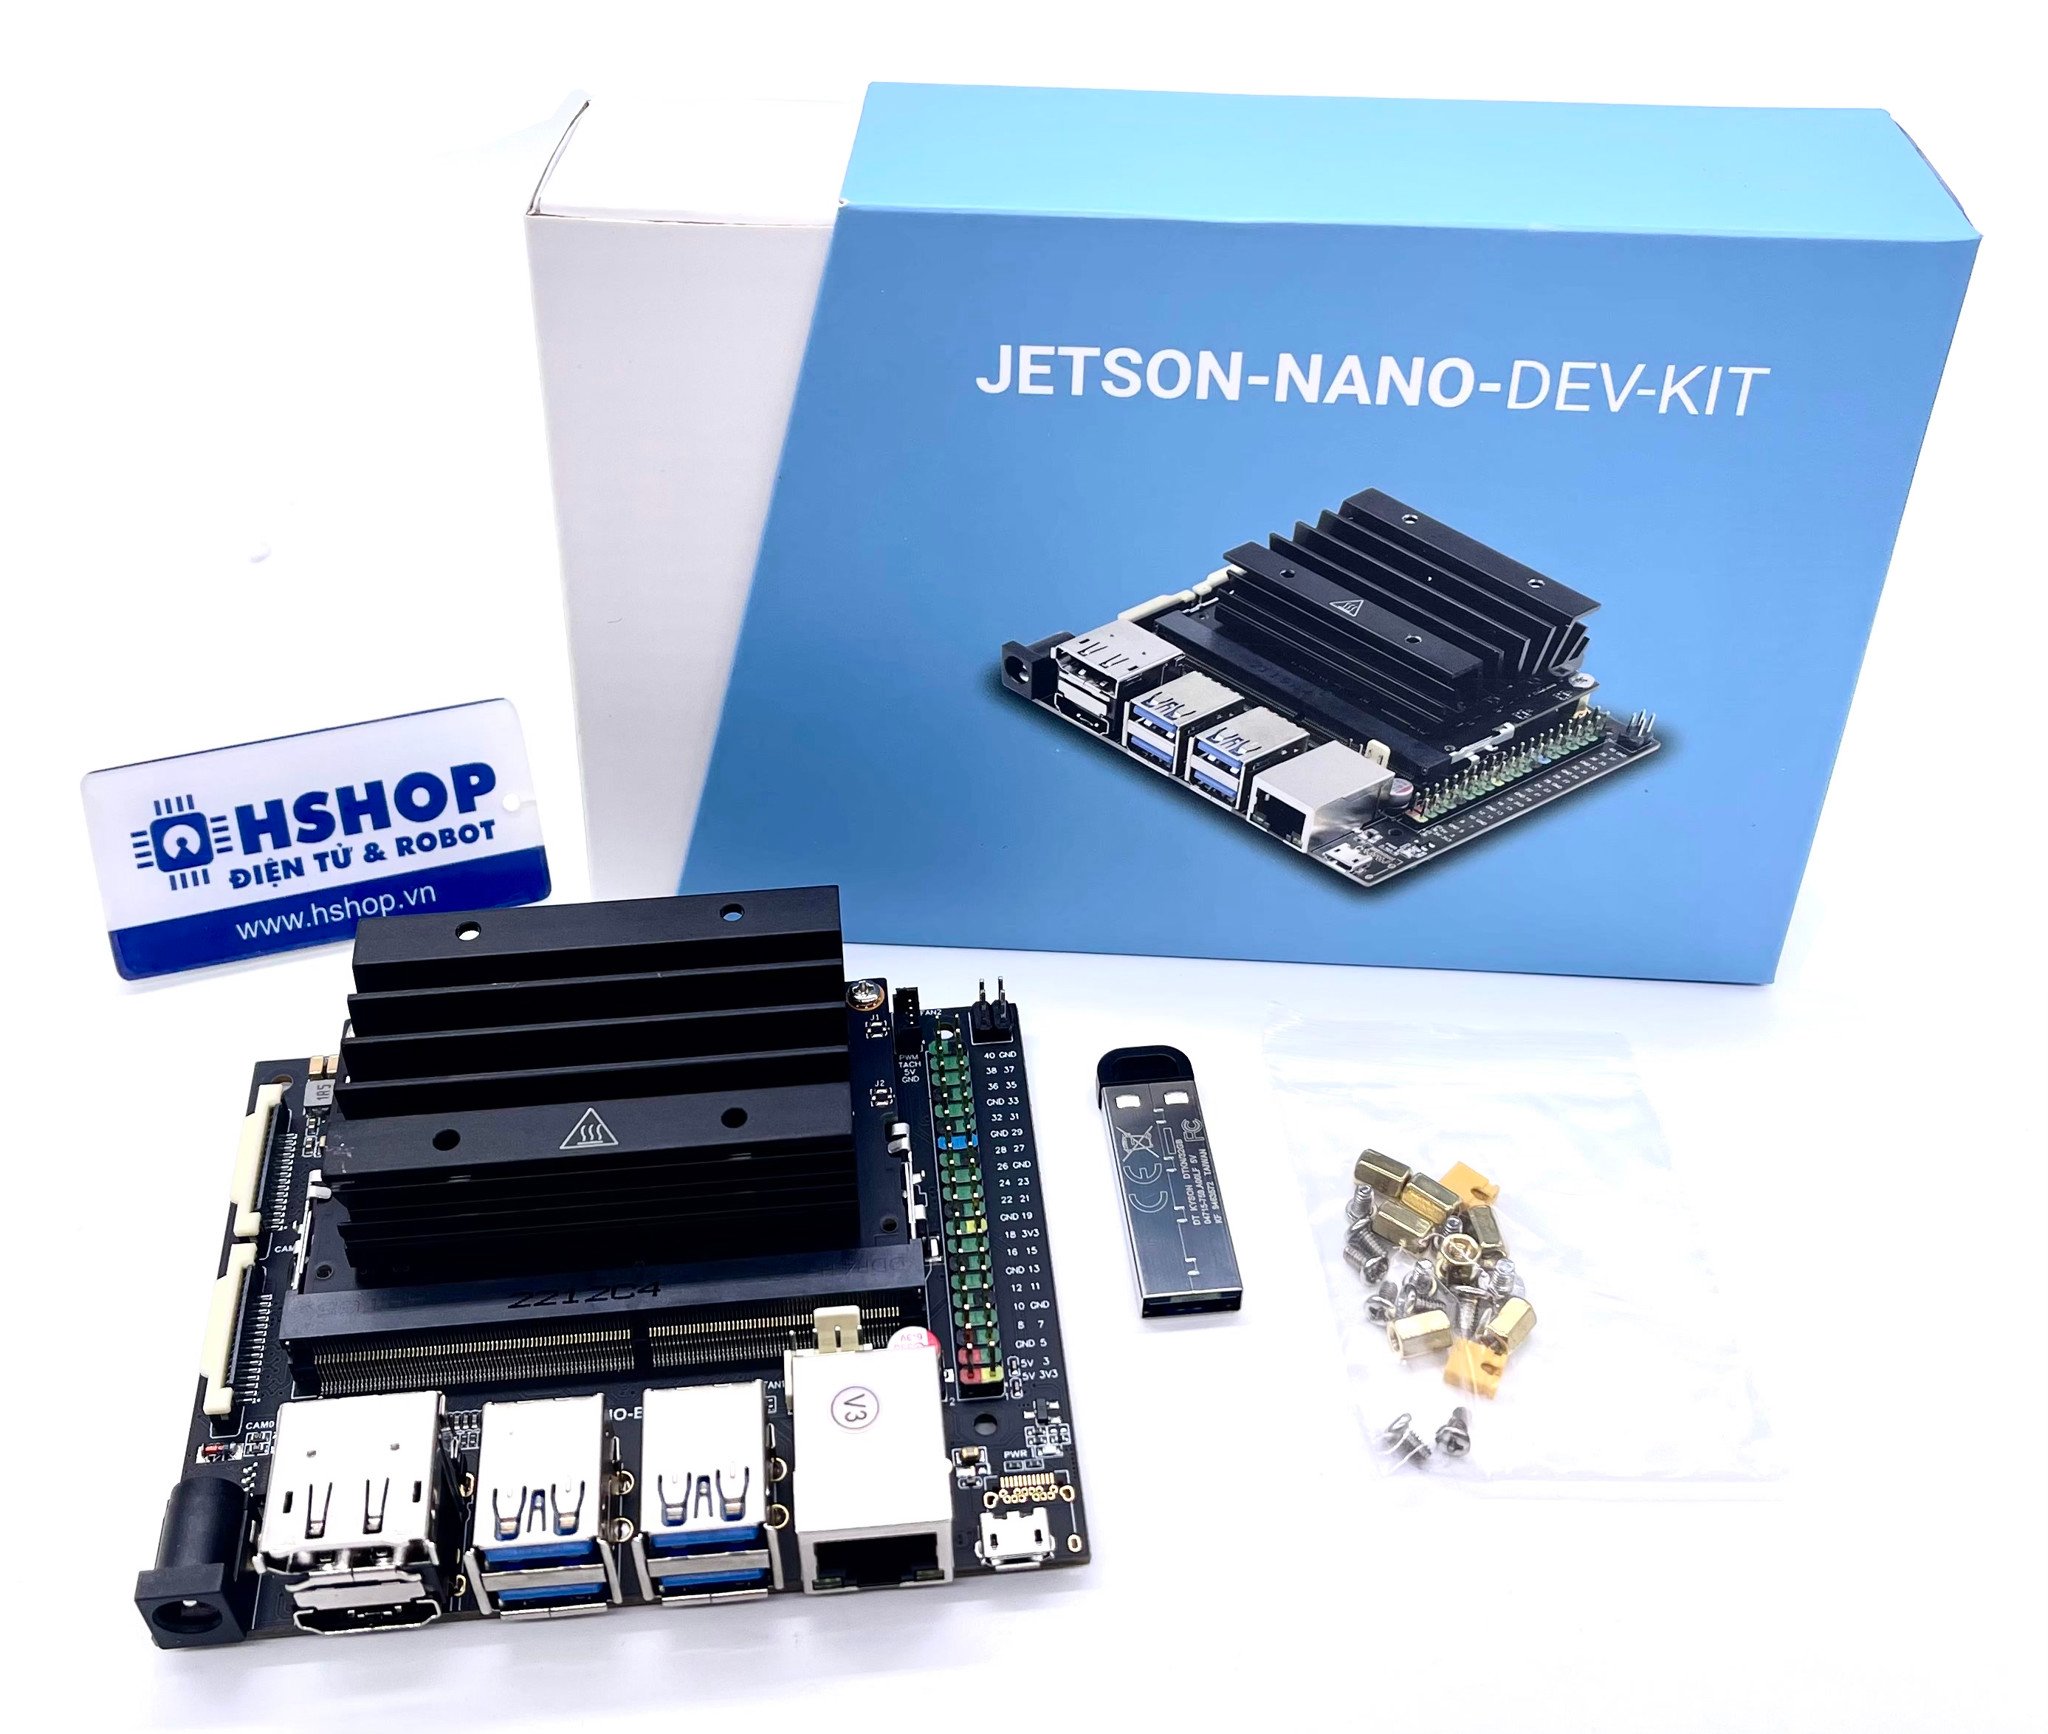 Jetson Nano Developer Kit